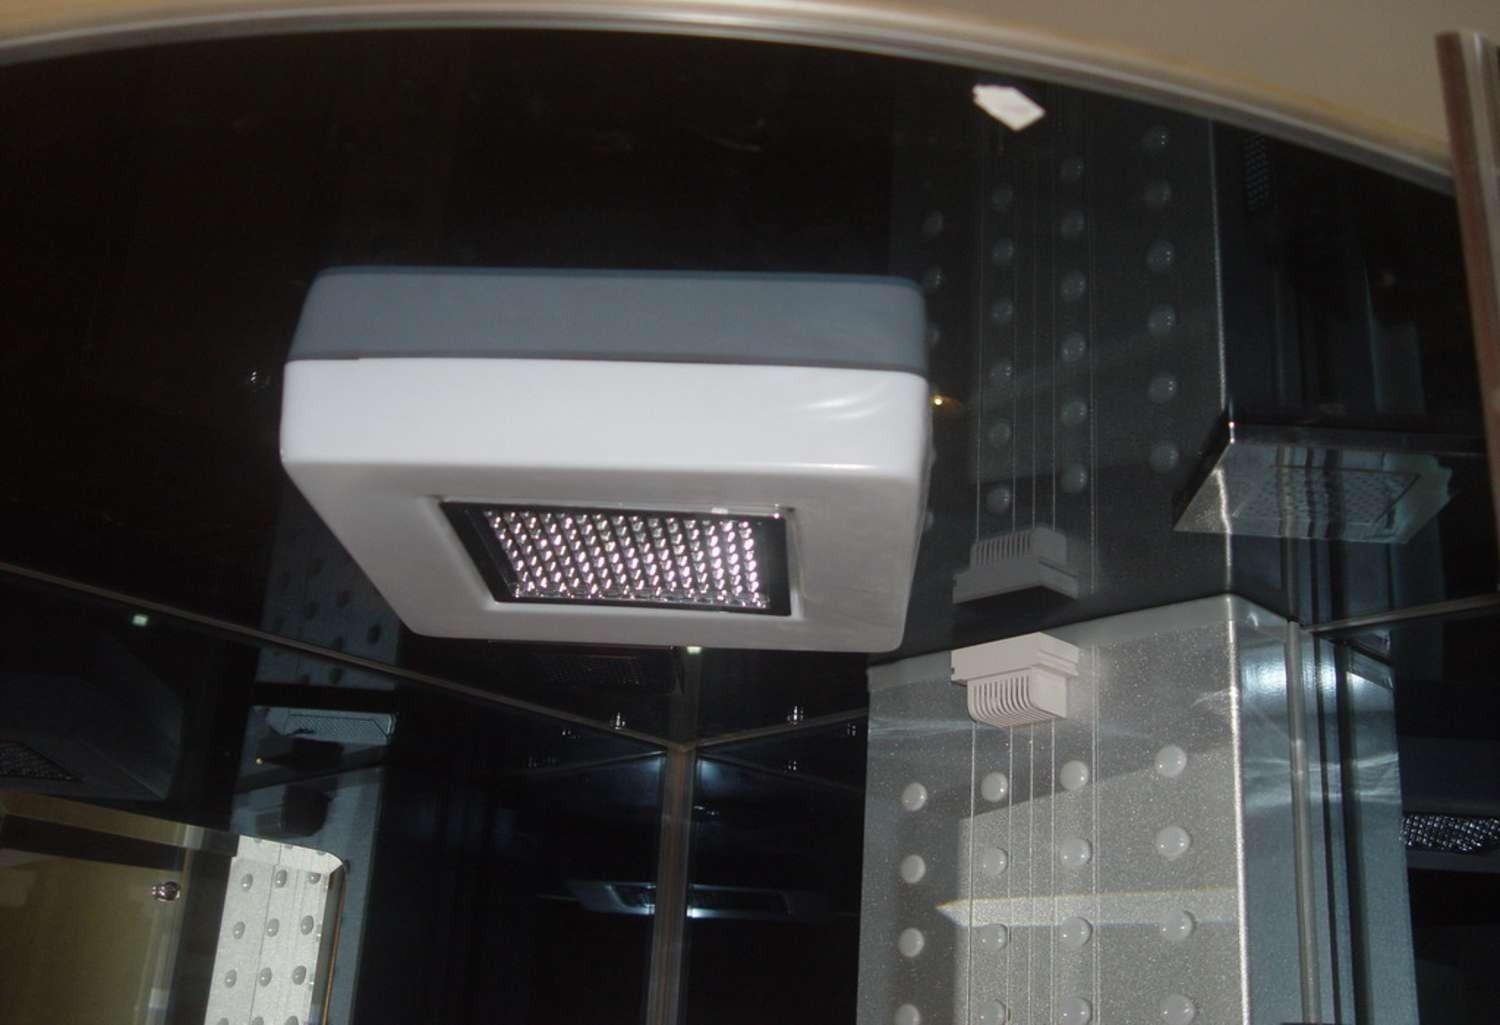 Cabine de douche hydromassante avec hammam AS-005A-2